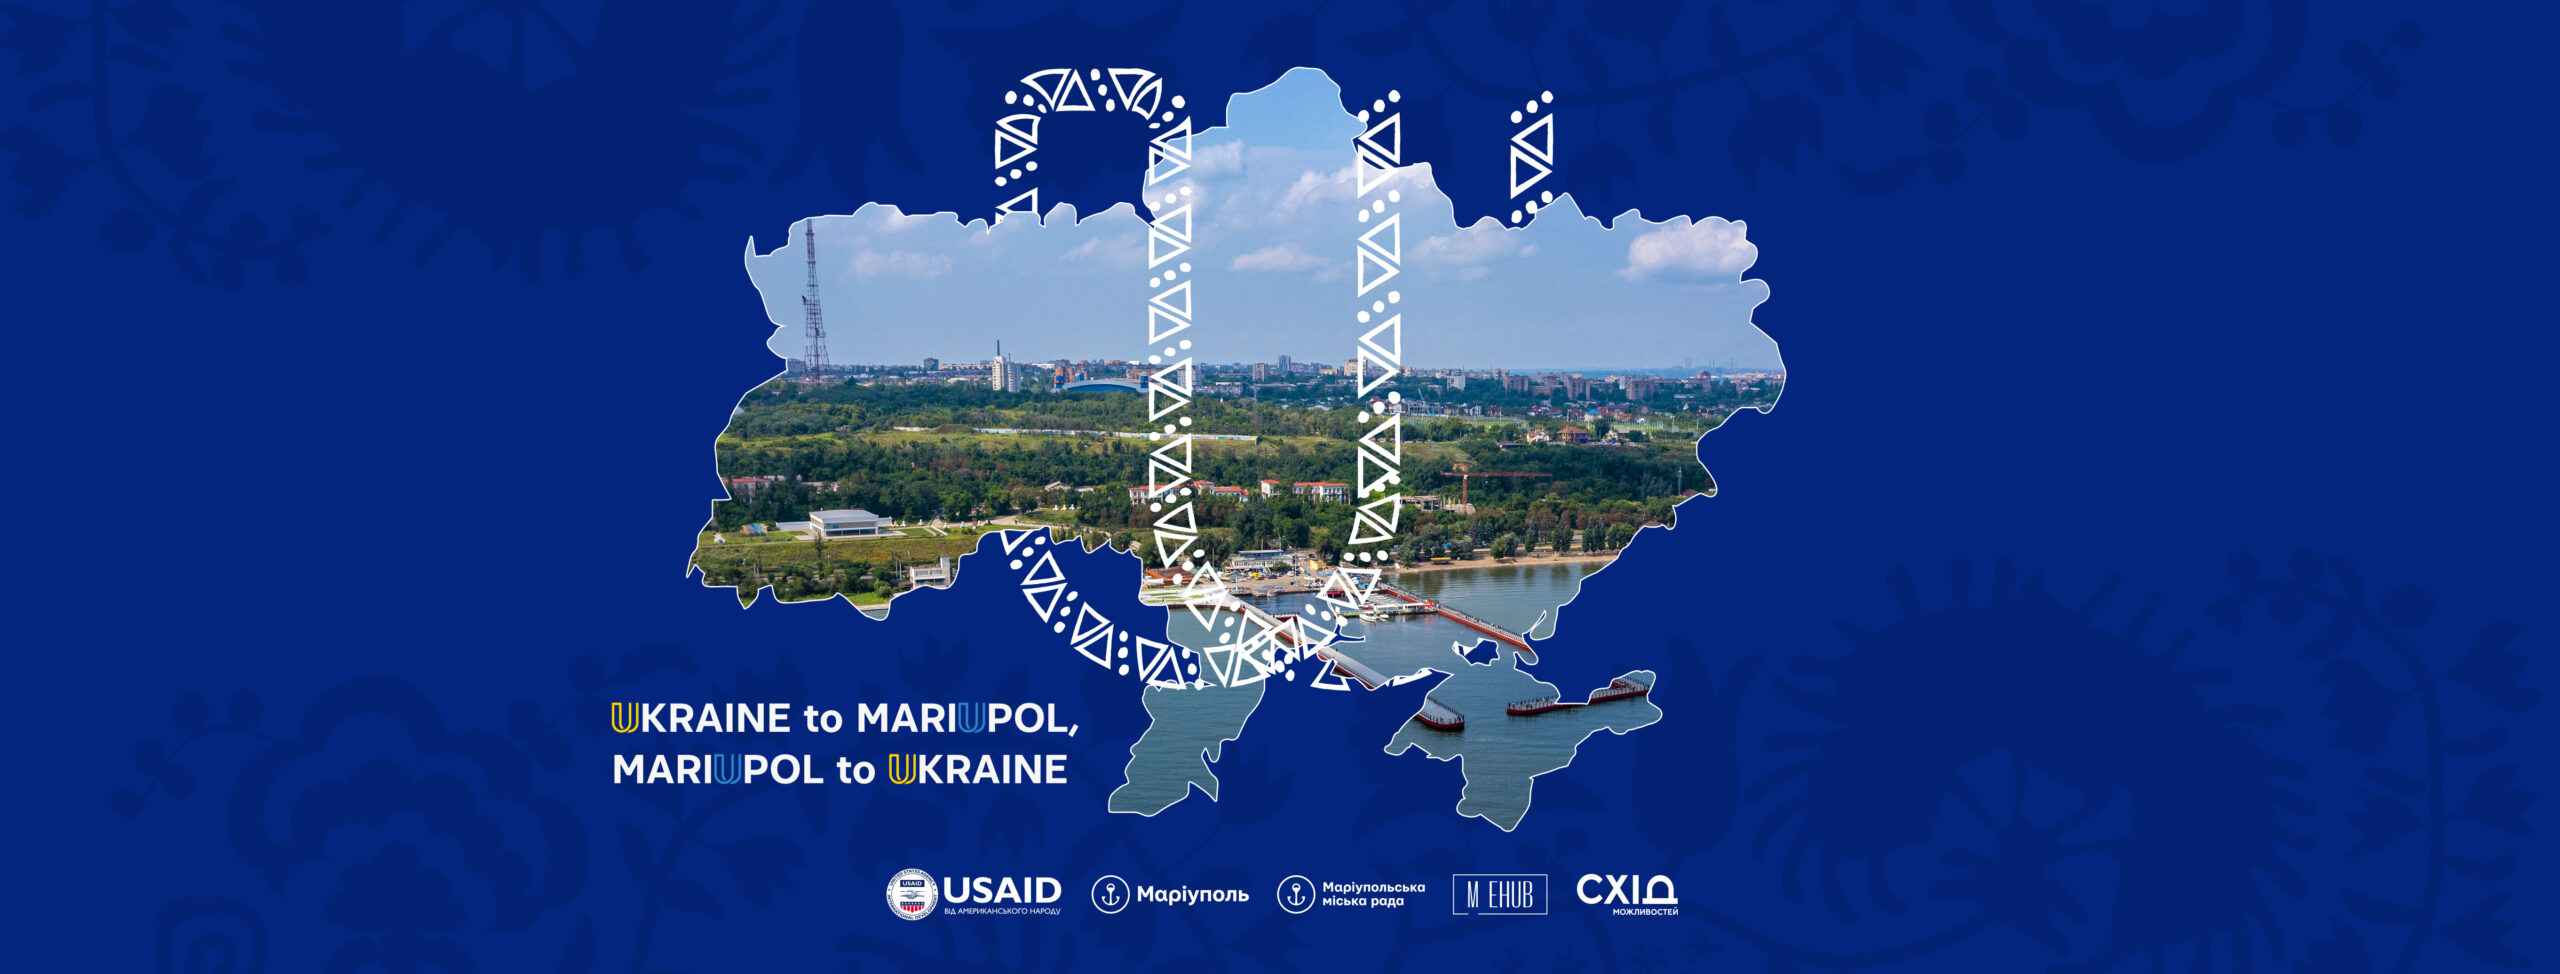 «Маріуполь Україні. Україна Маріуполю» – проєкт, що єднає країну